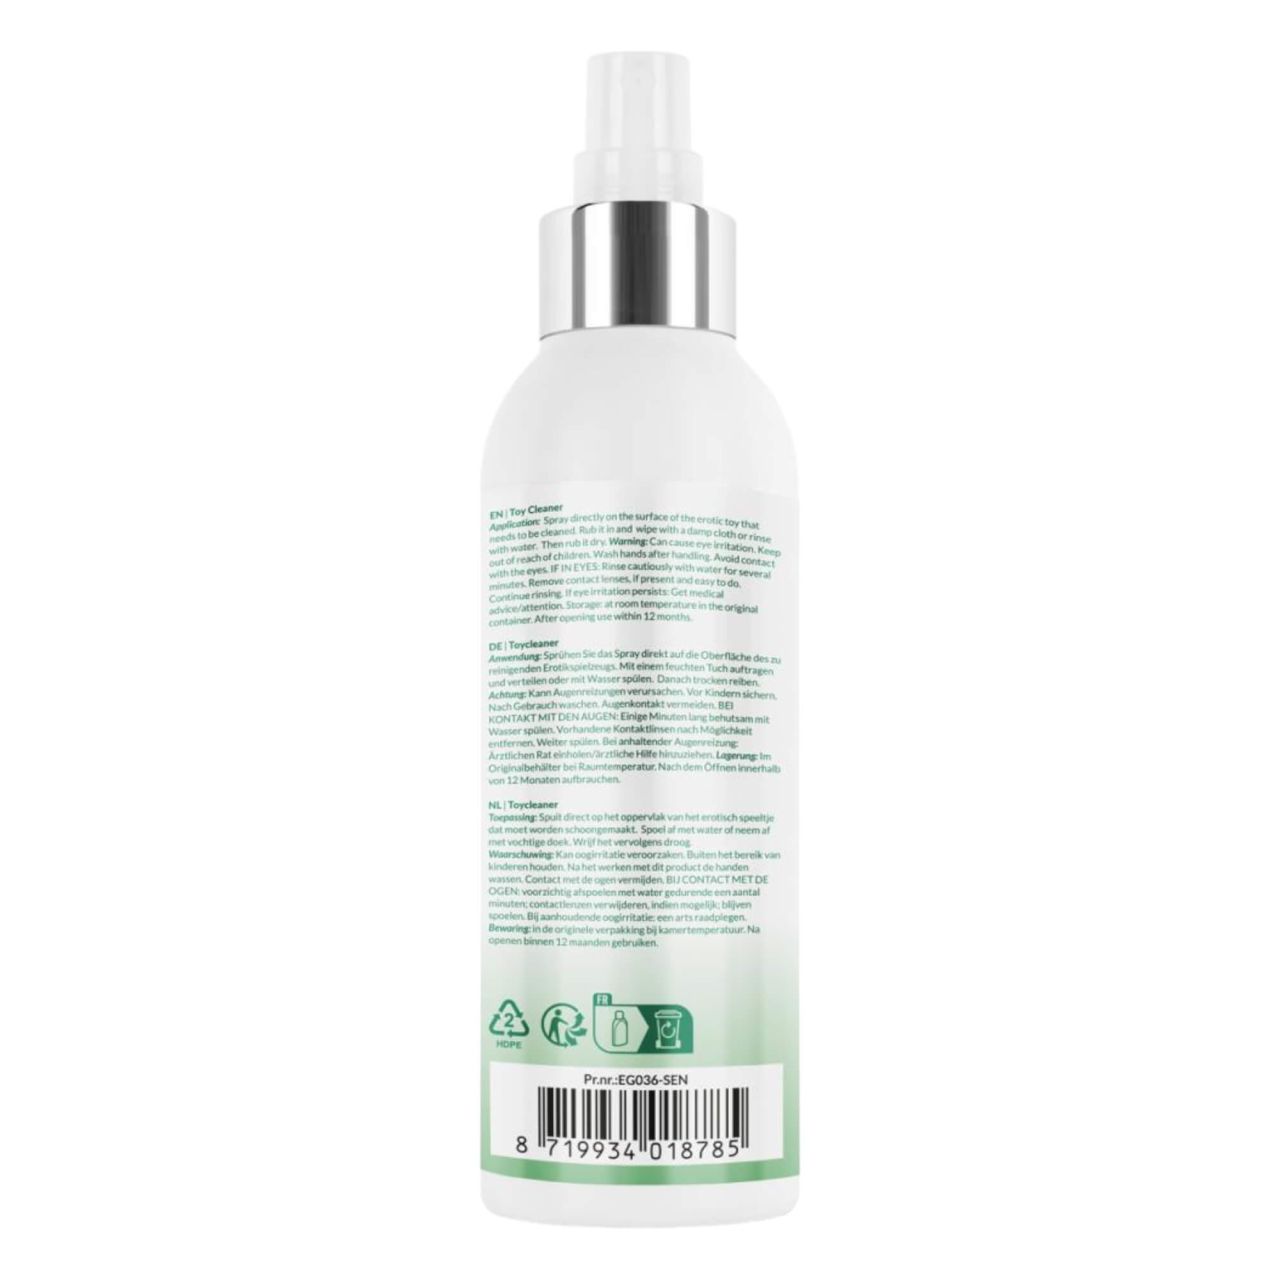 EasyGlide Sensitive - fertőtlenítő spray (150 ml)